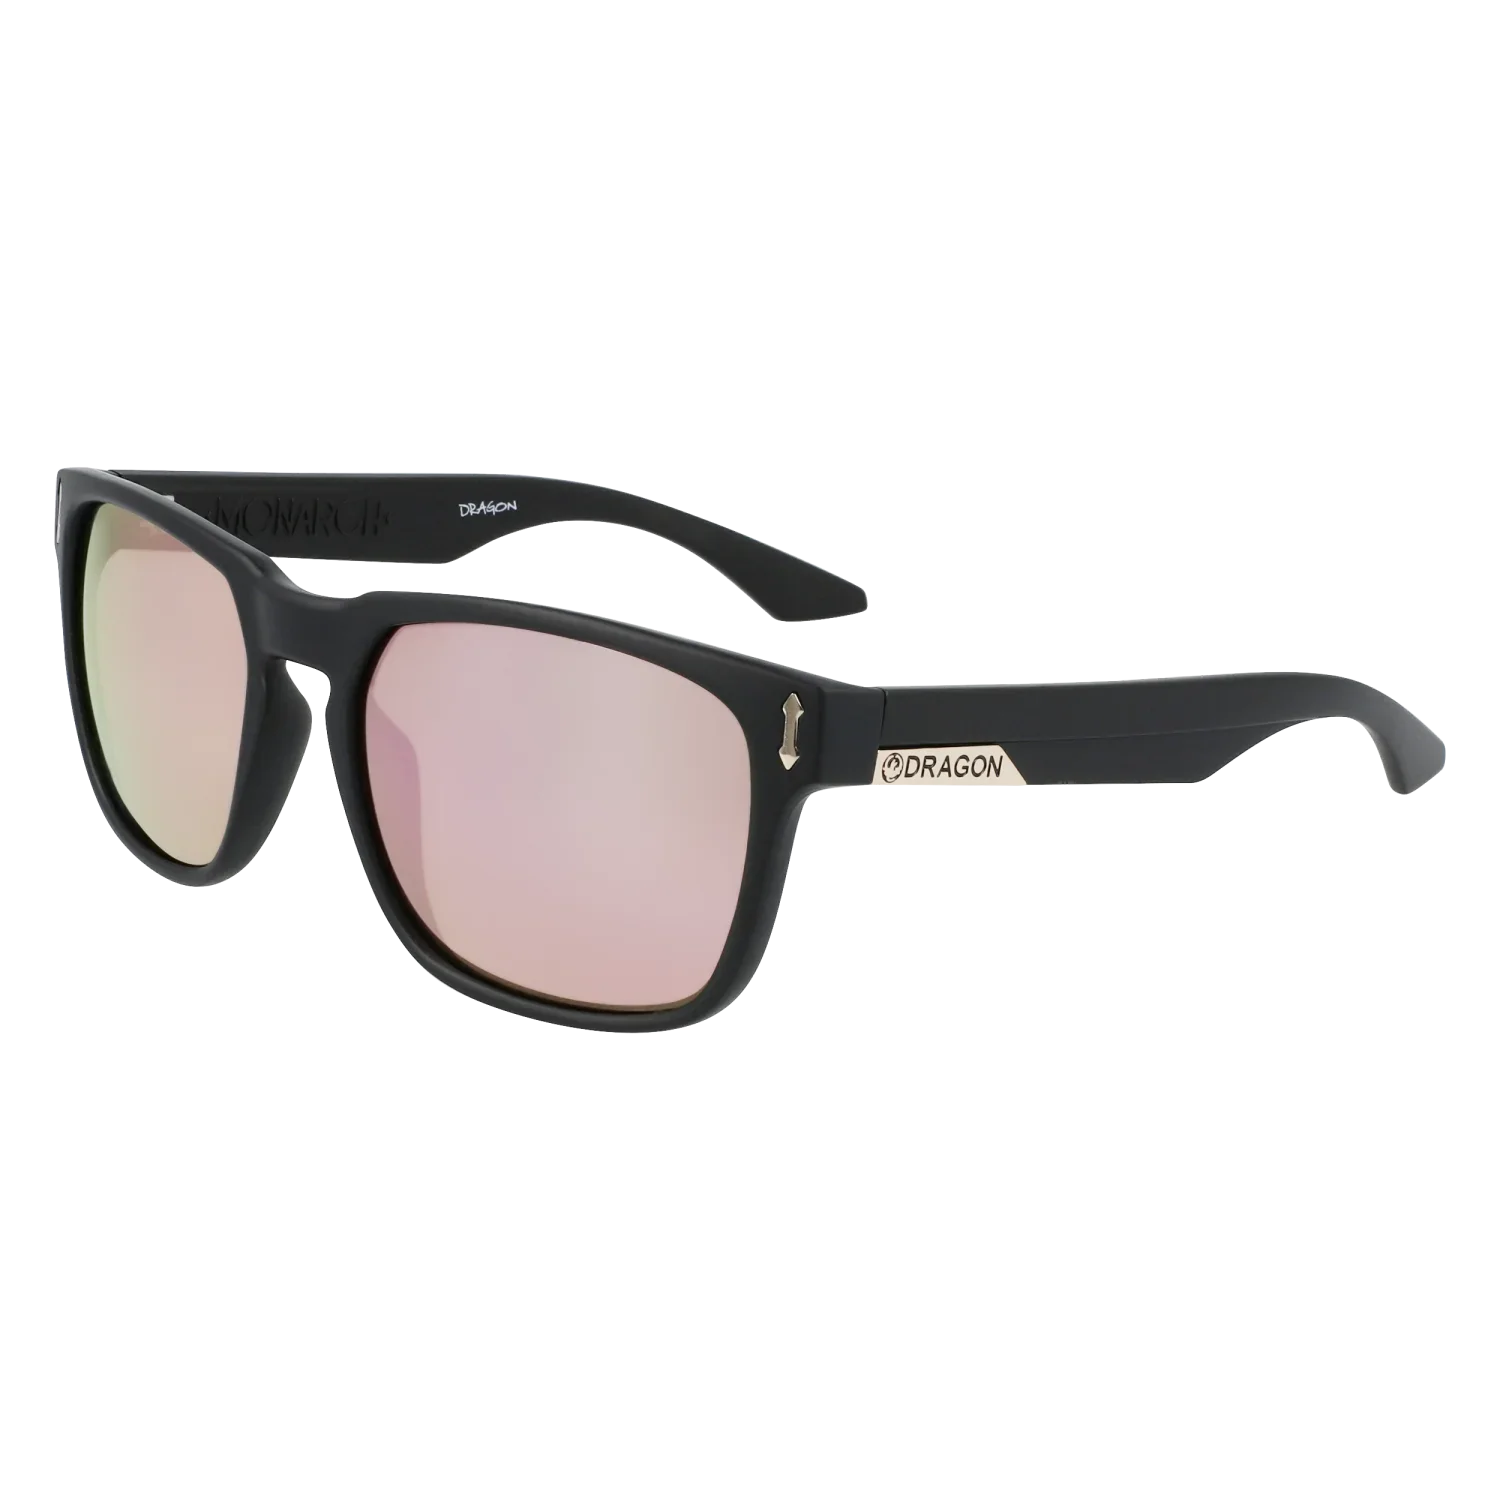 'Dragon Monarch LumaLens Sunglasses' in 'Matte Black W/ Lumalens Rose Gold Ion' colour